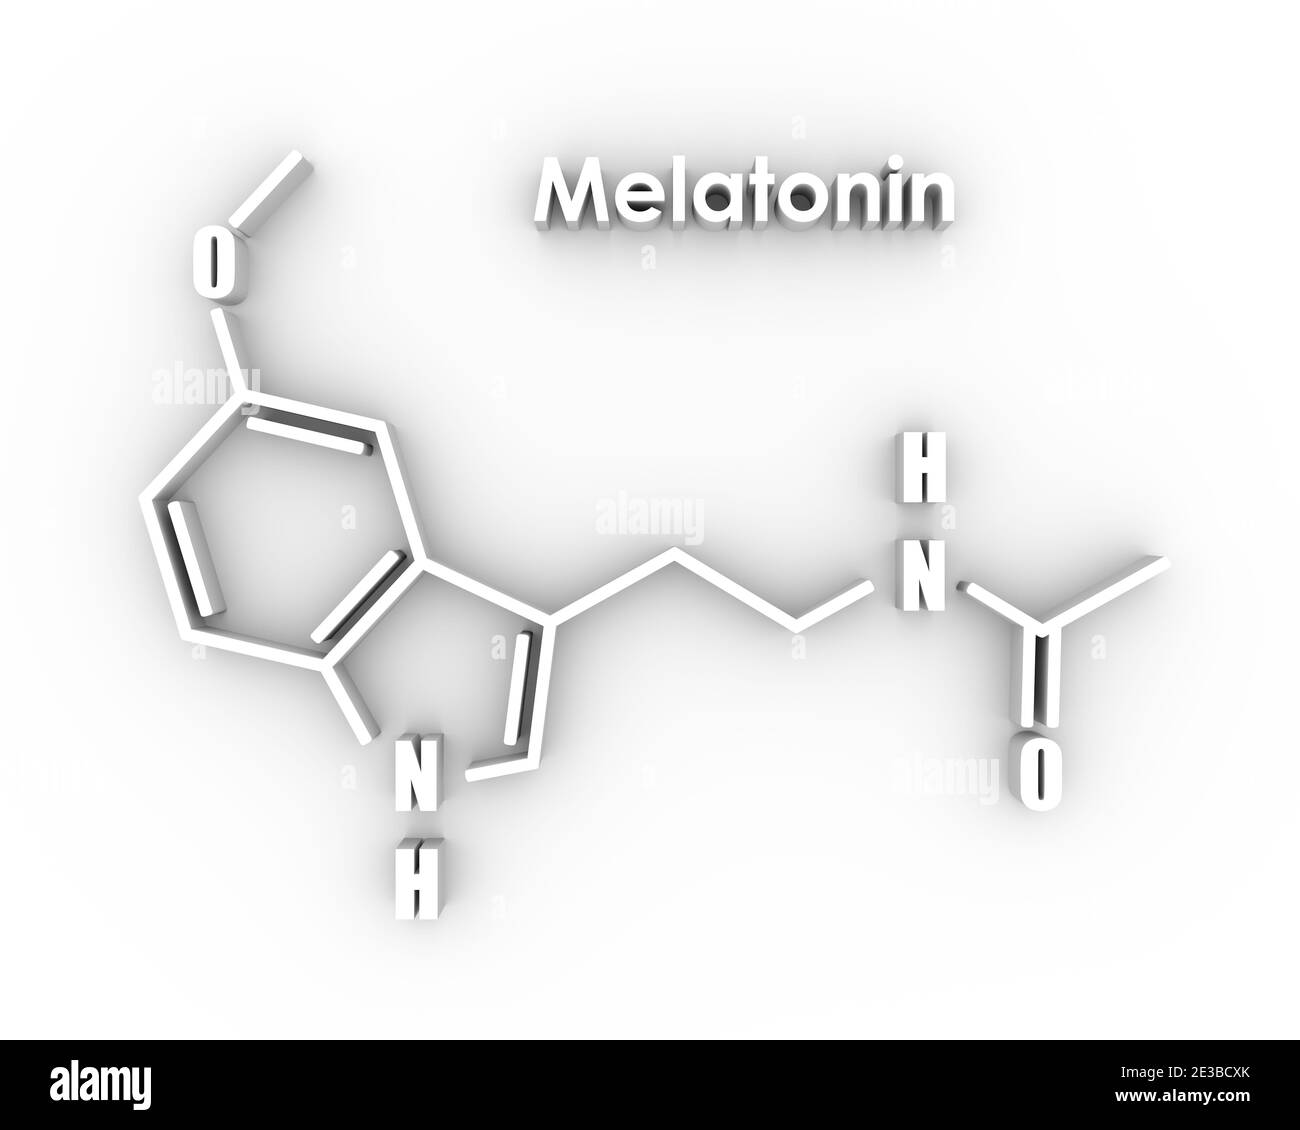 Chemische Summenformel des Melatoninhormons. Beim Menschen spielt es eine Rolle bei der zirkadianen Rhythmussynchronisation. Stilisierte konventionelle Skelettformel. Stockfoto